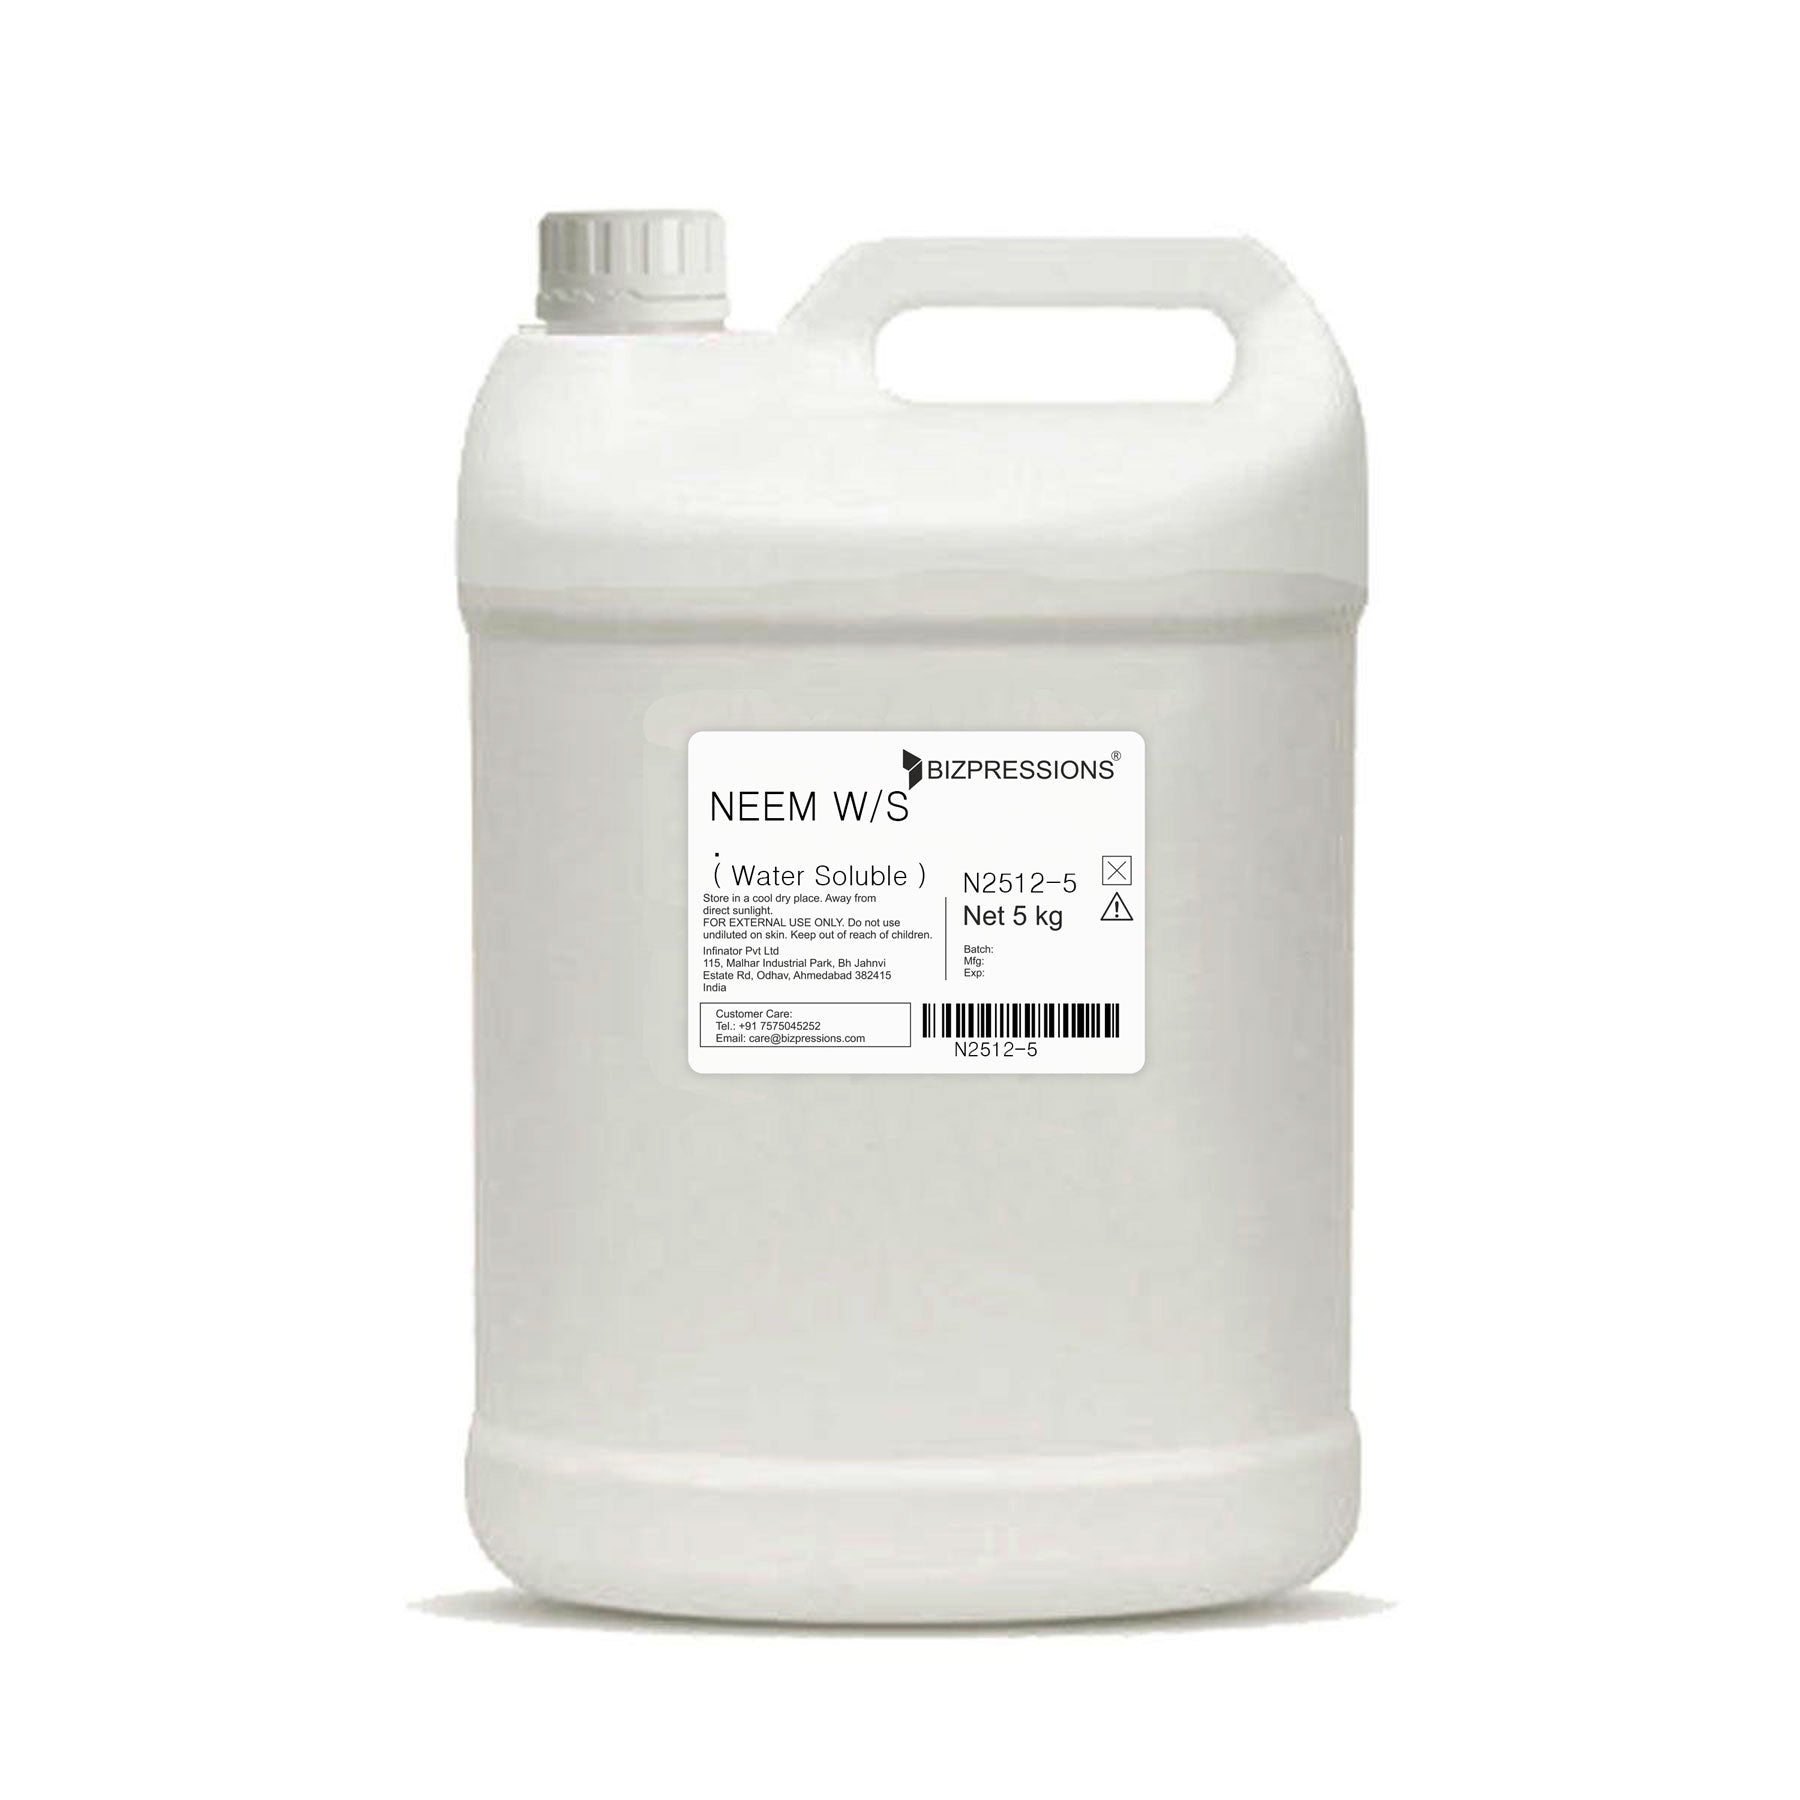 NEEM W/S - Fragrance ( Water Soluble ) 5 kg